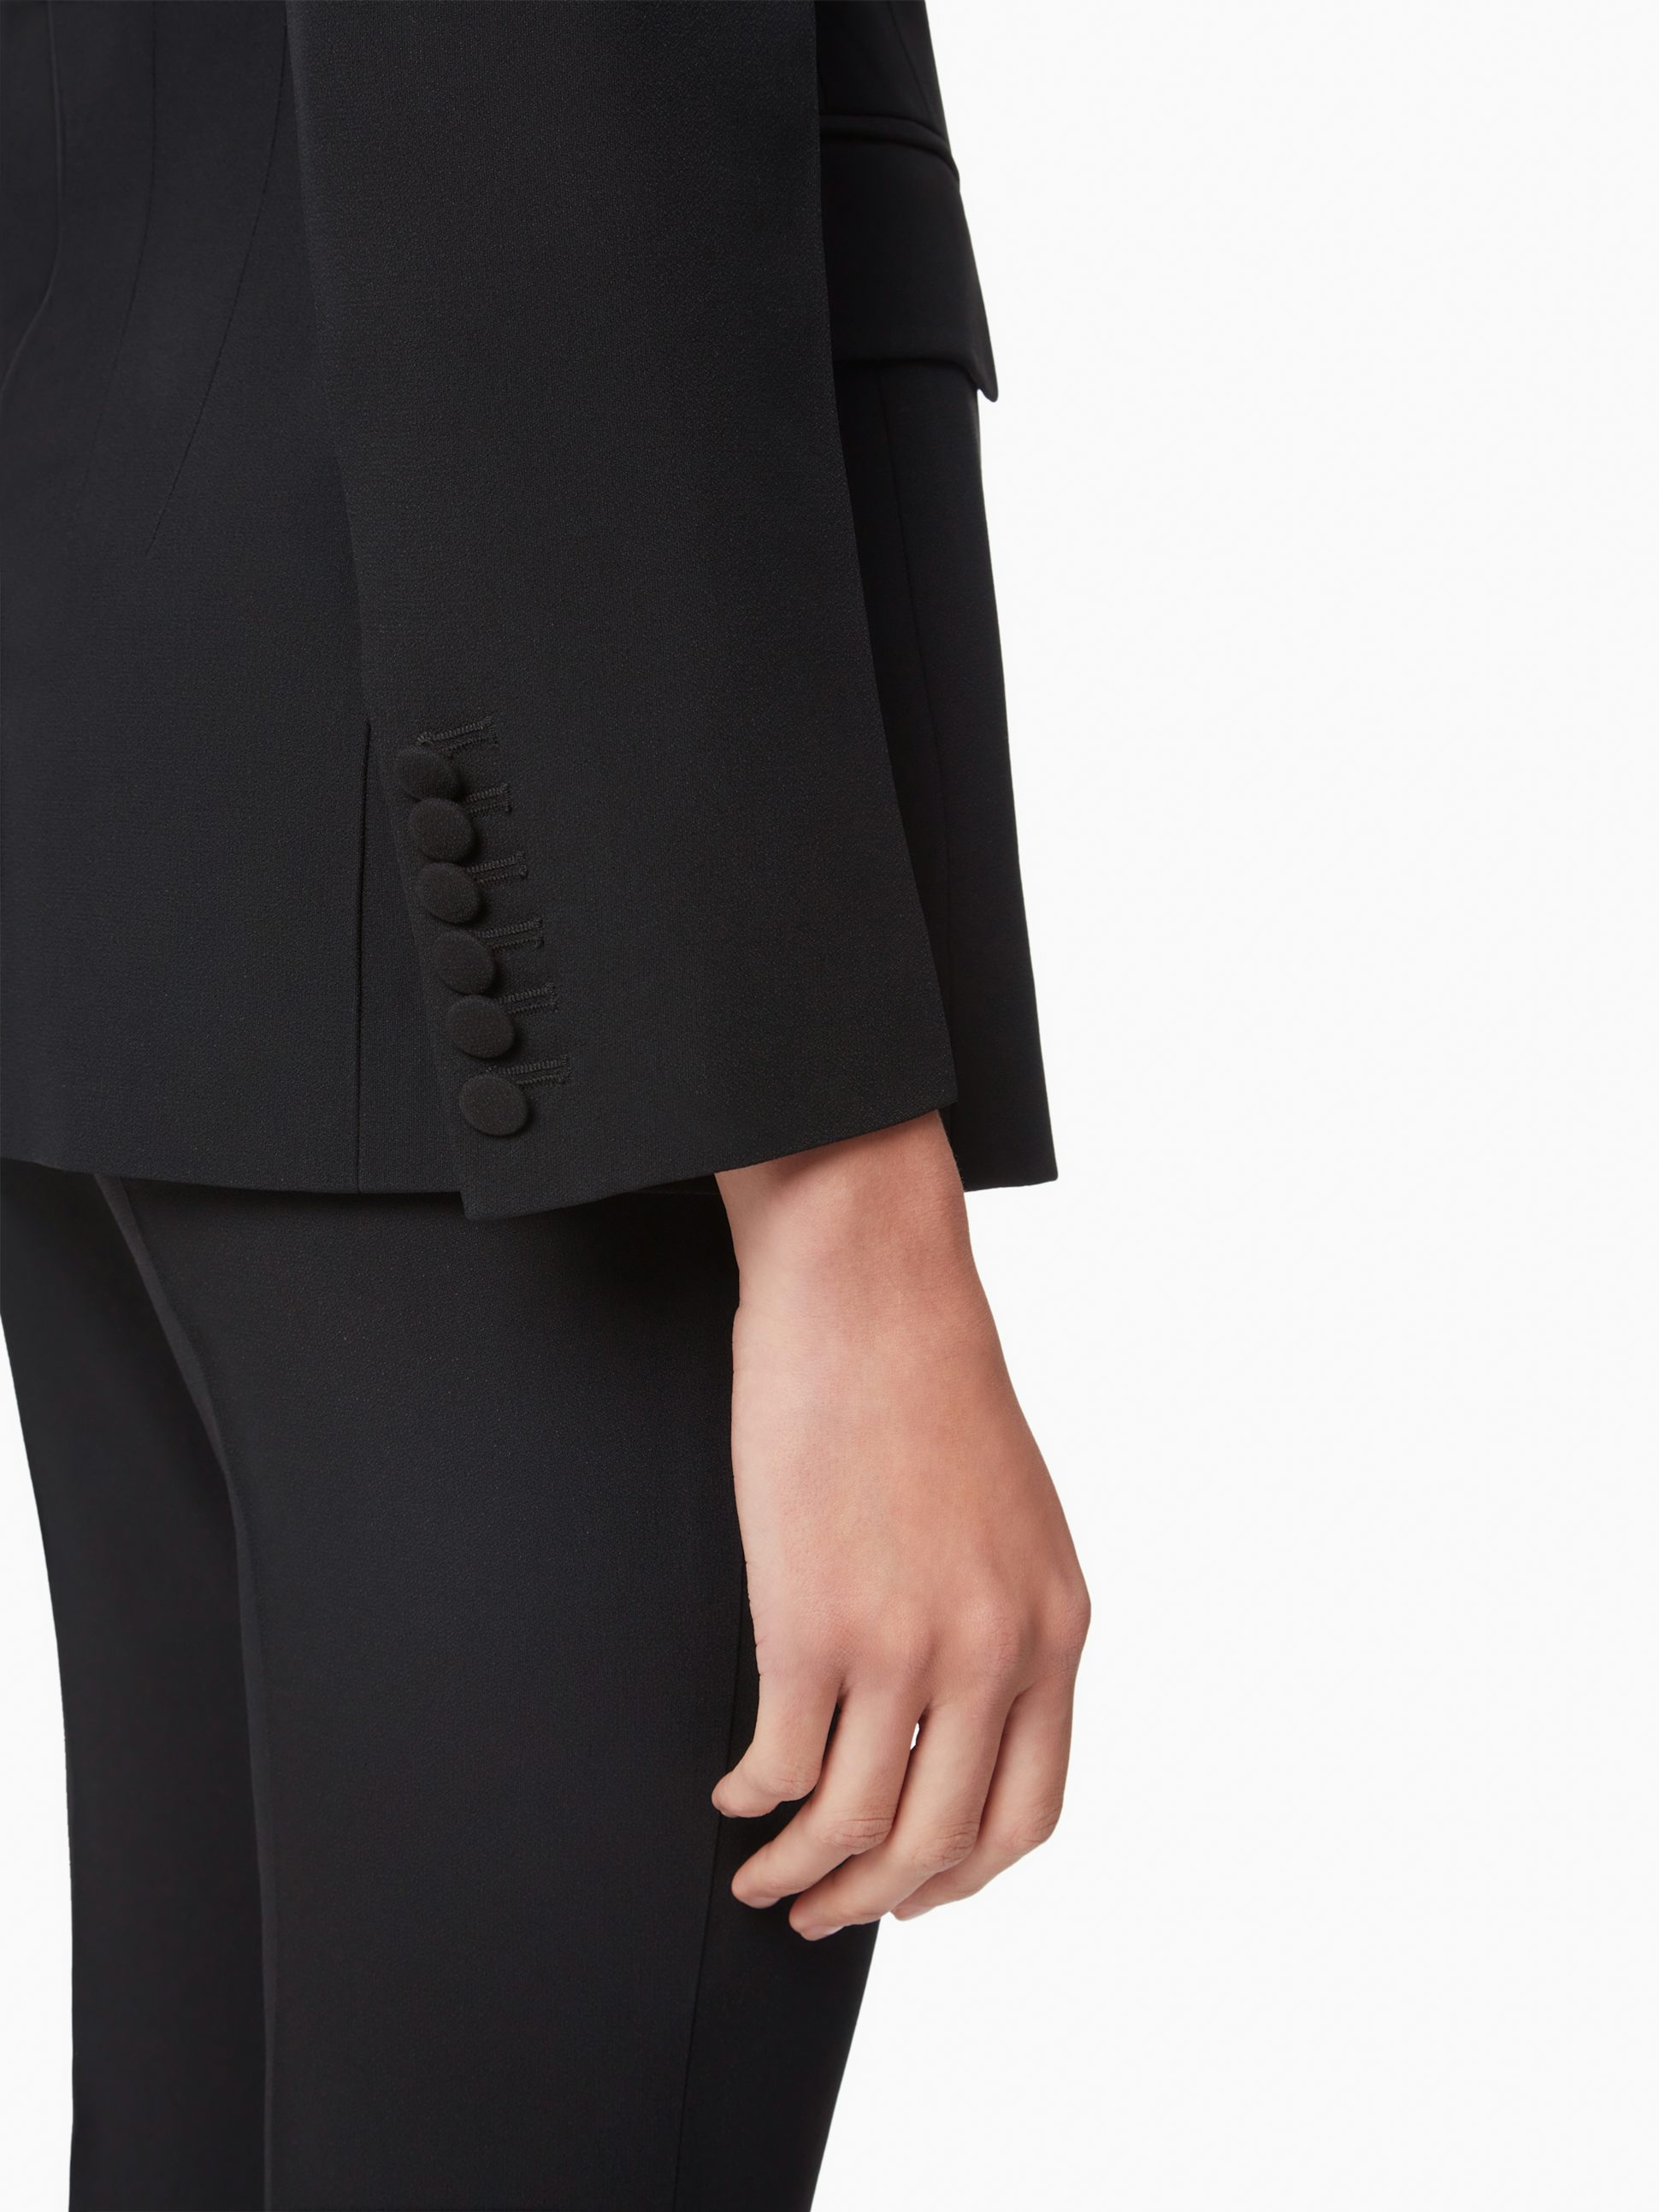 Slim fit blazer in black - Nina Ricci